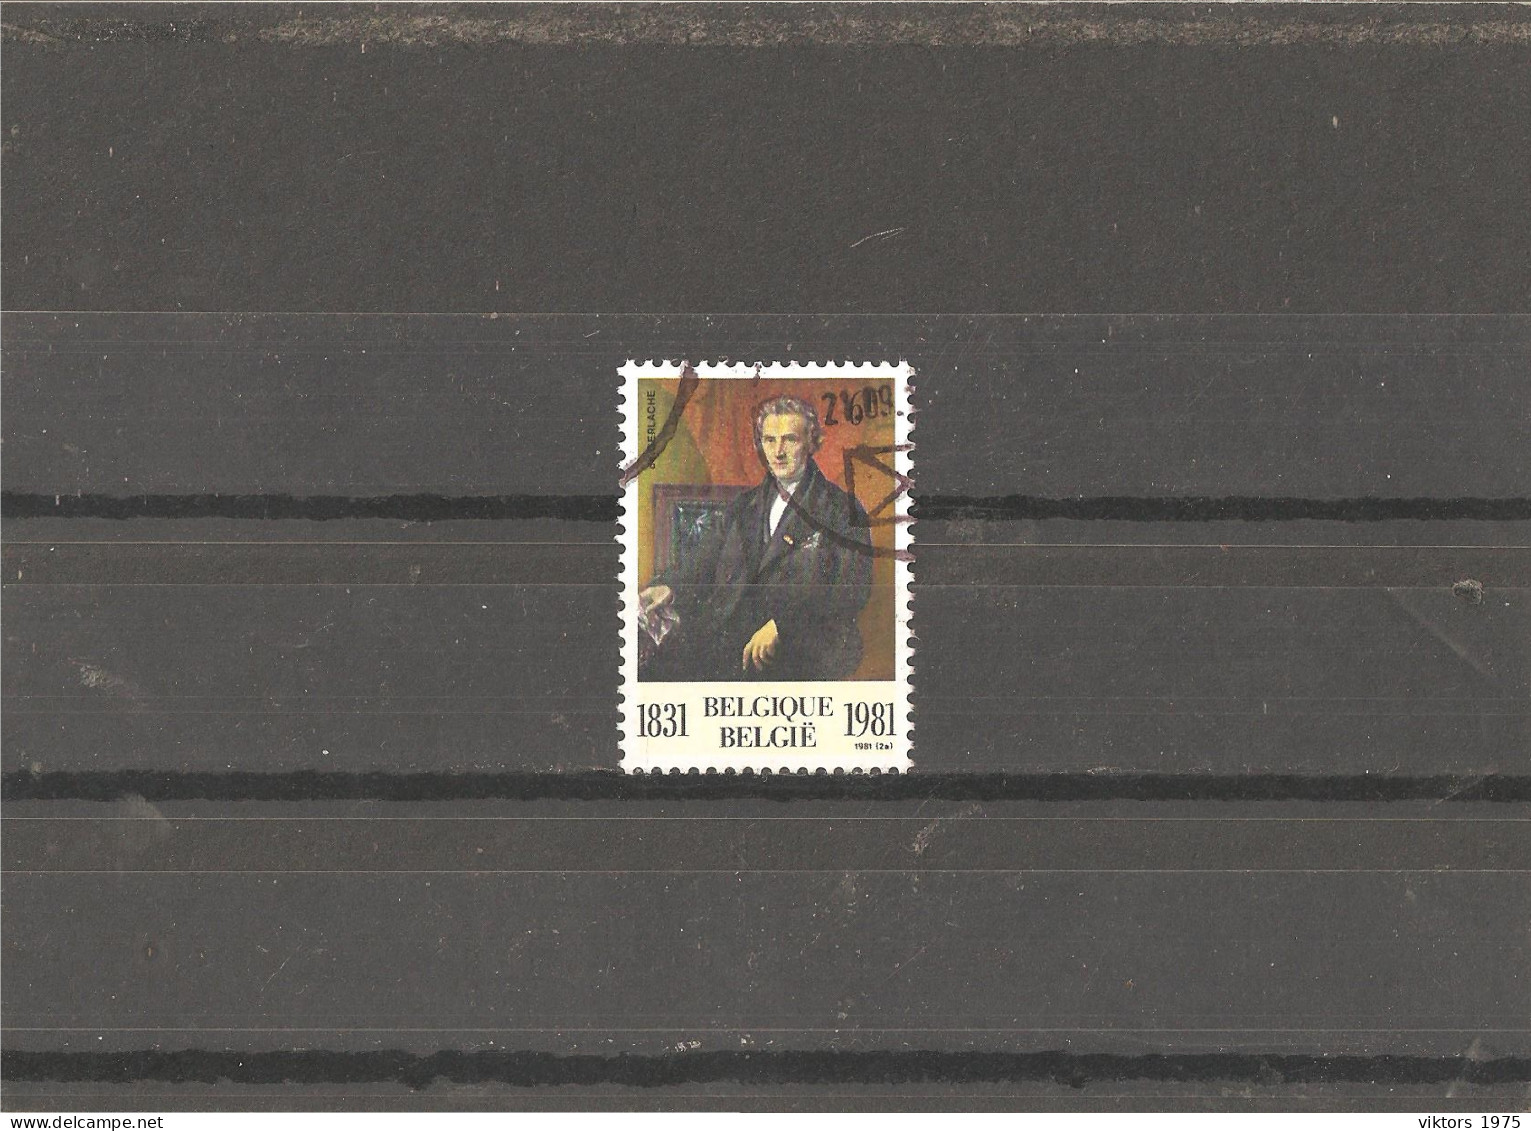 Used Stamp Nr.2053 In MICHEL Catalog - Usati